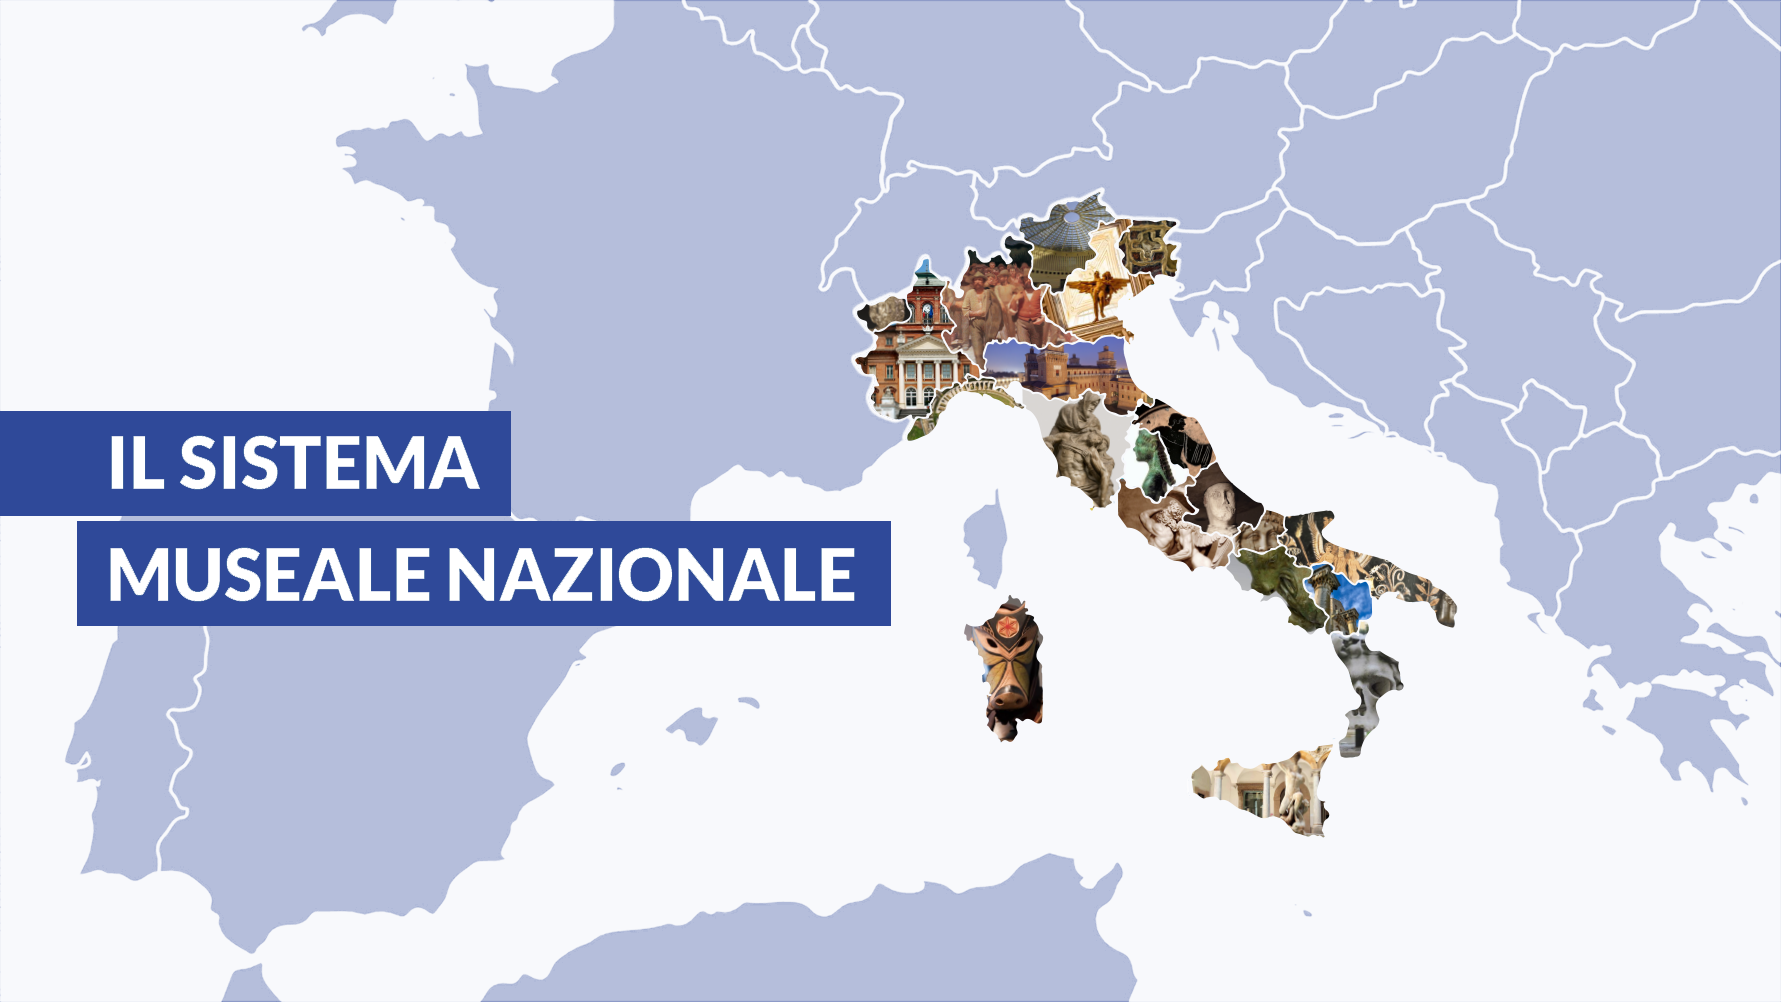 Immagine che raffigura geograficamente l'Italia